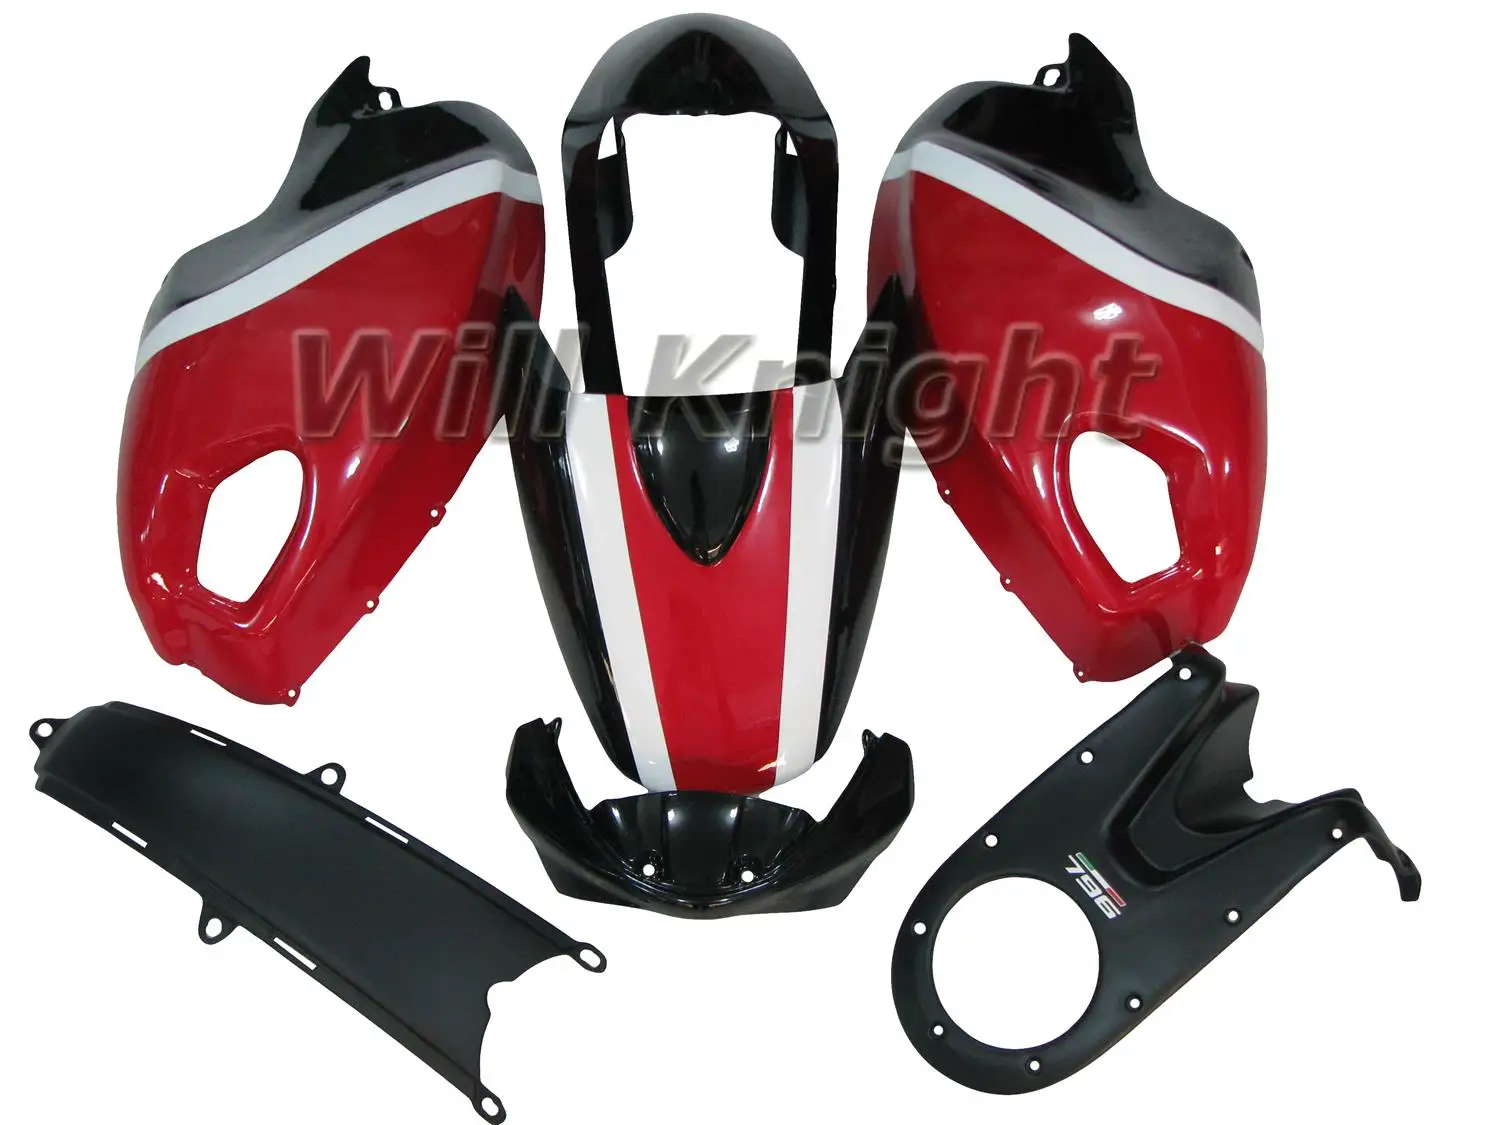 

Комплекты обтекателей ABS для Ducati 696 796 795 M1000 M1100 Monster 2009-2011 корпус инжектора красный черный